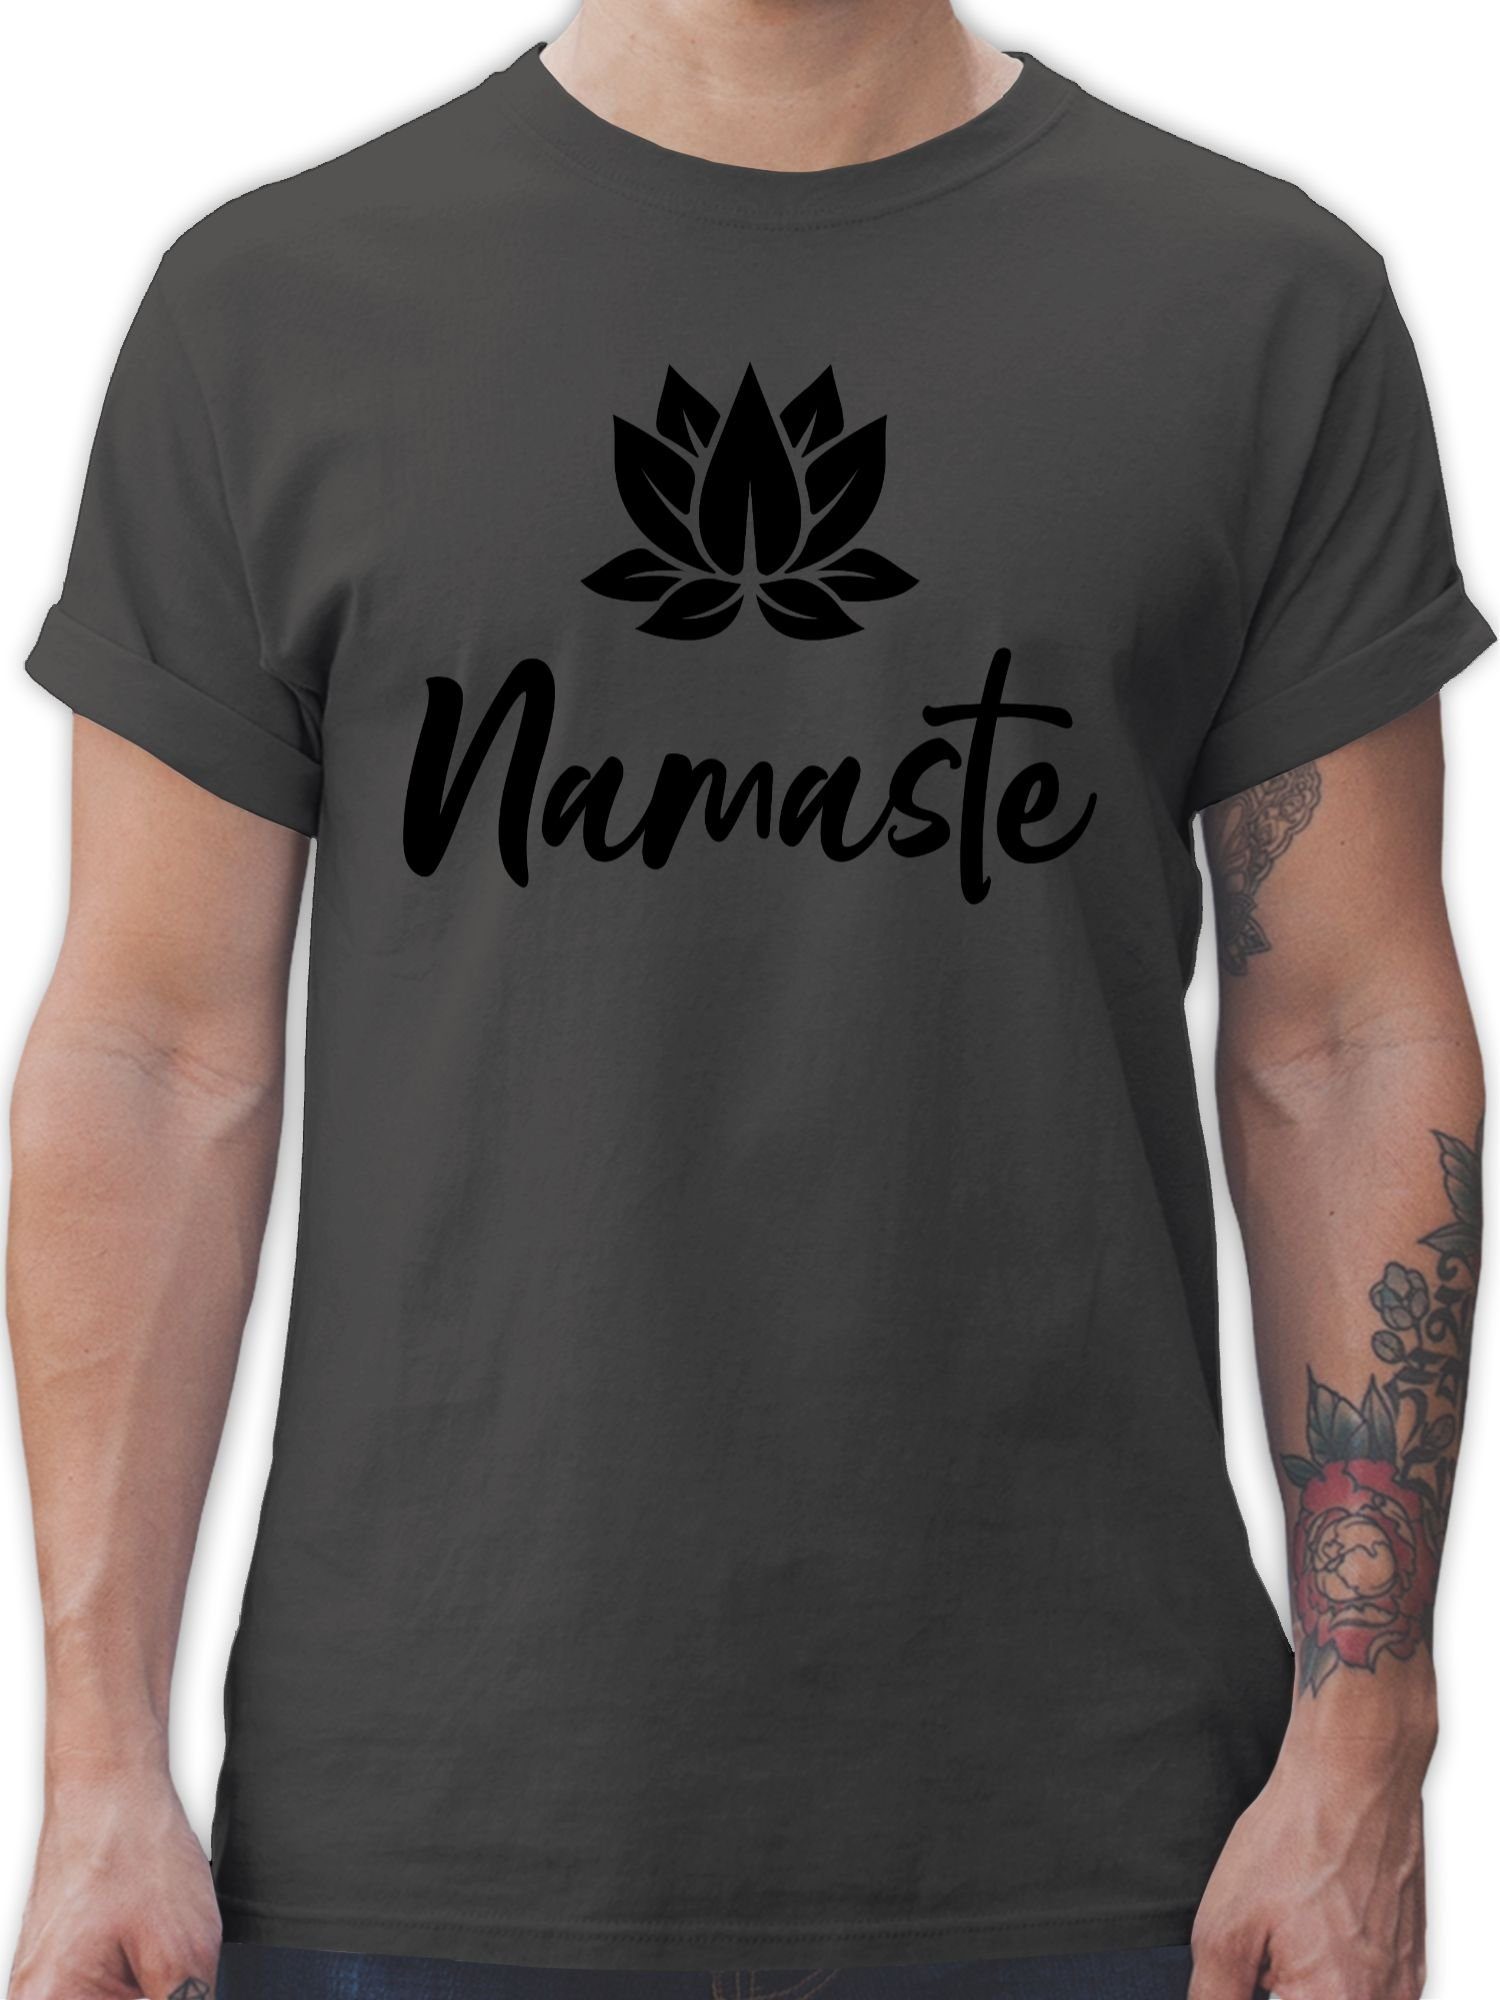 Shirtracer T-Shirt Namaste mit Lotusblüte schwarz Yoga und Wellness Geschenk 01 Dunkelgrau